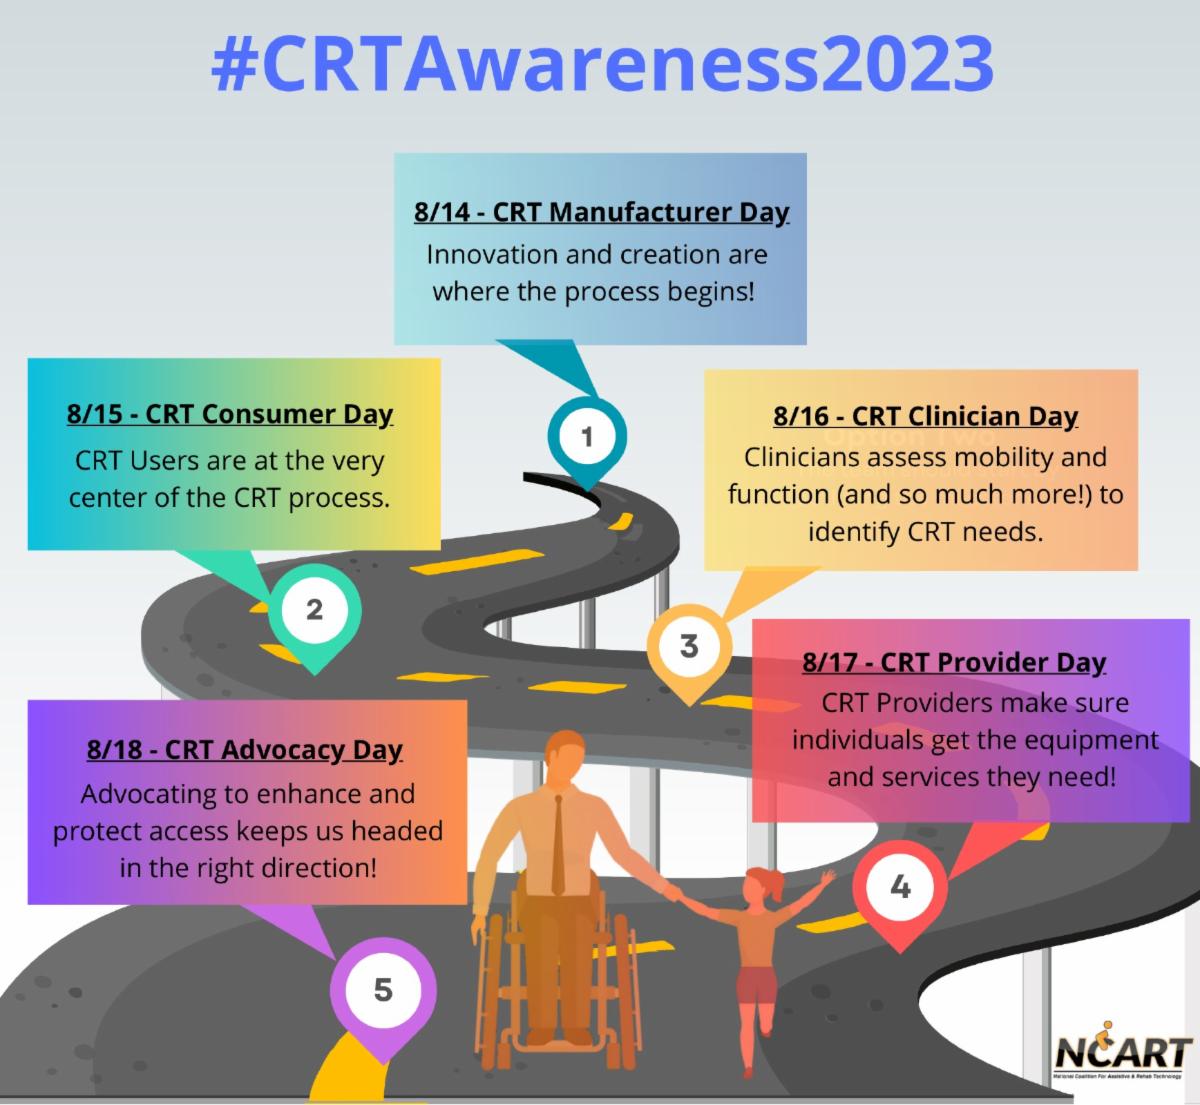 CRT Awareness Week (Aug 14 - 18, 2023)